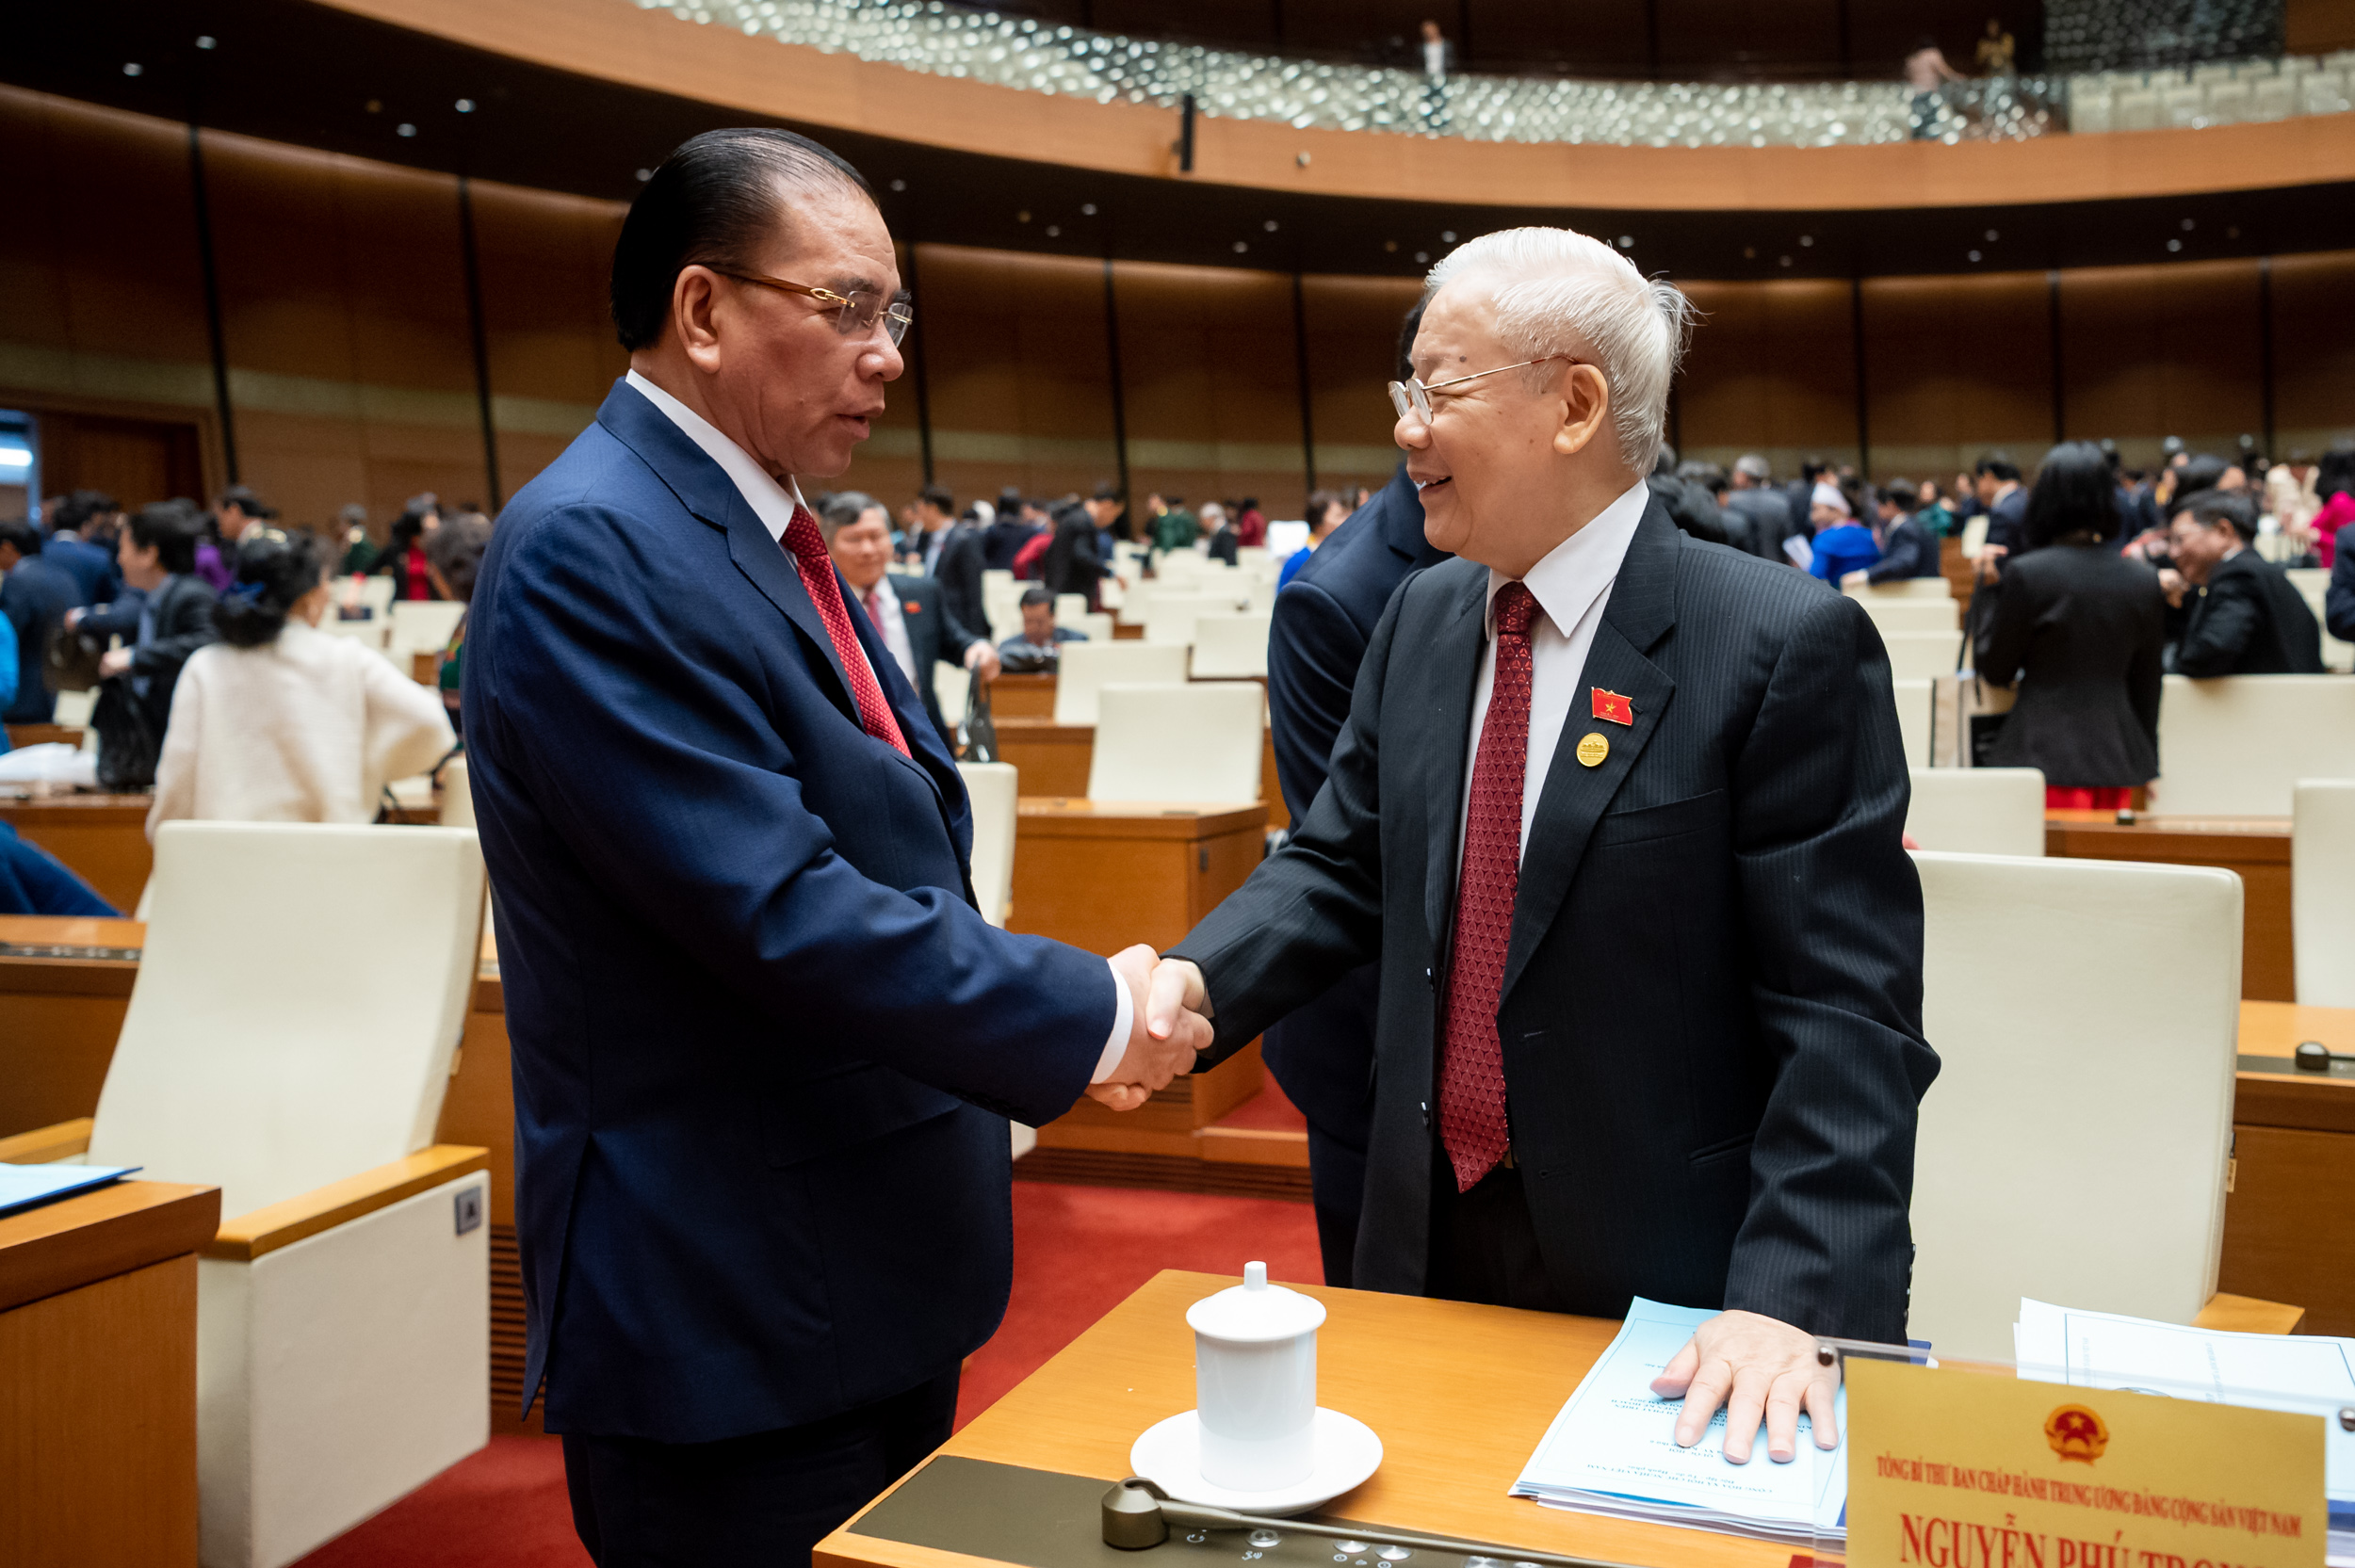 Tổng Bí thư Nguyễn Phú Trọng cùng các đồng chí nguyên lãnh đạo Đảng và Nhà nước bên lề phiên khai mạc